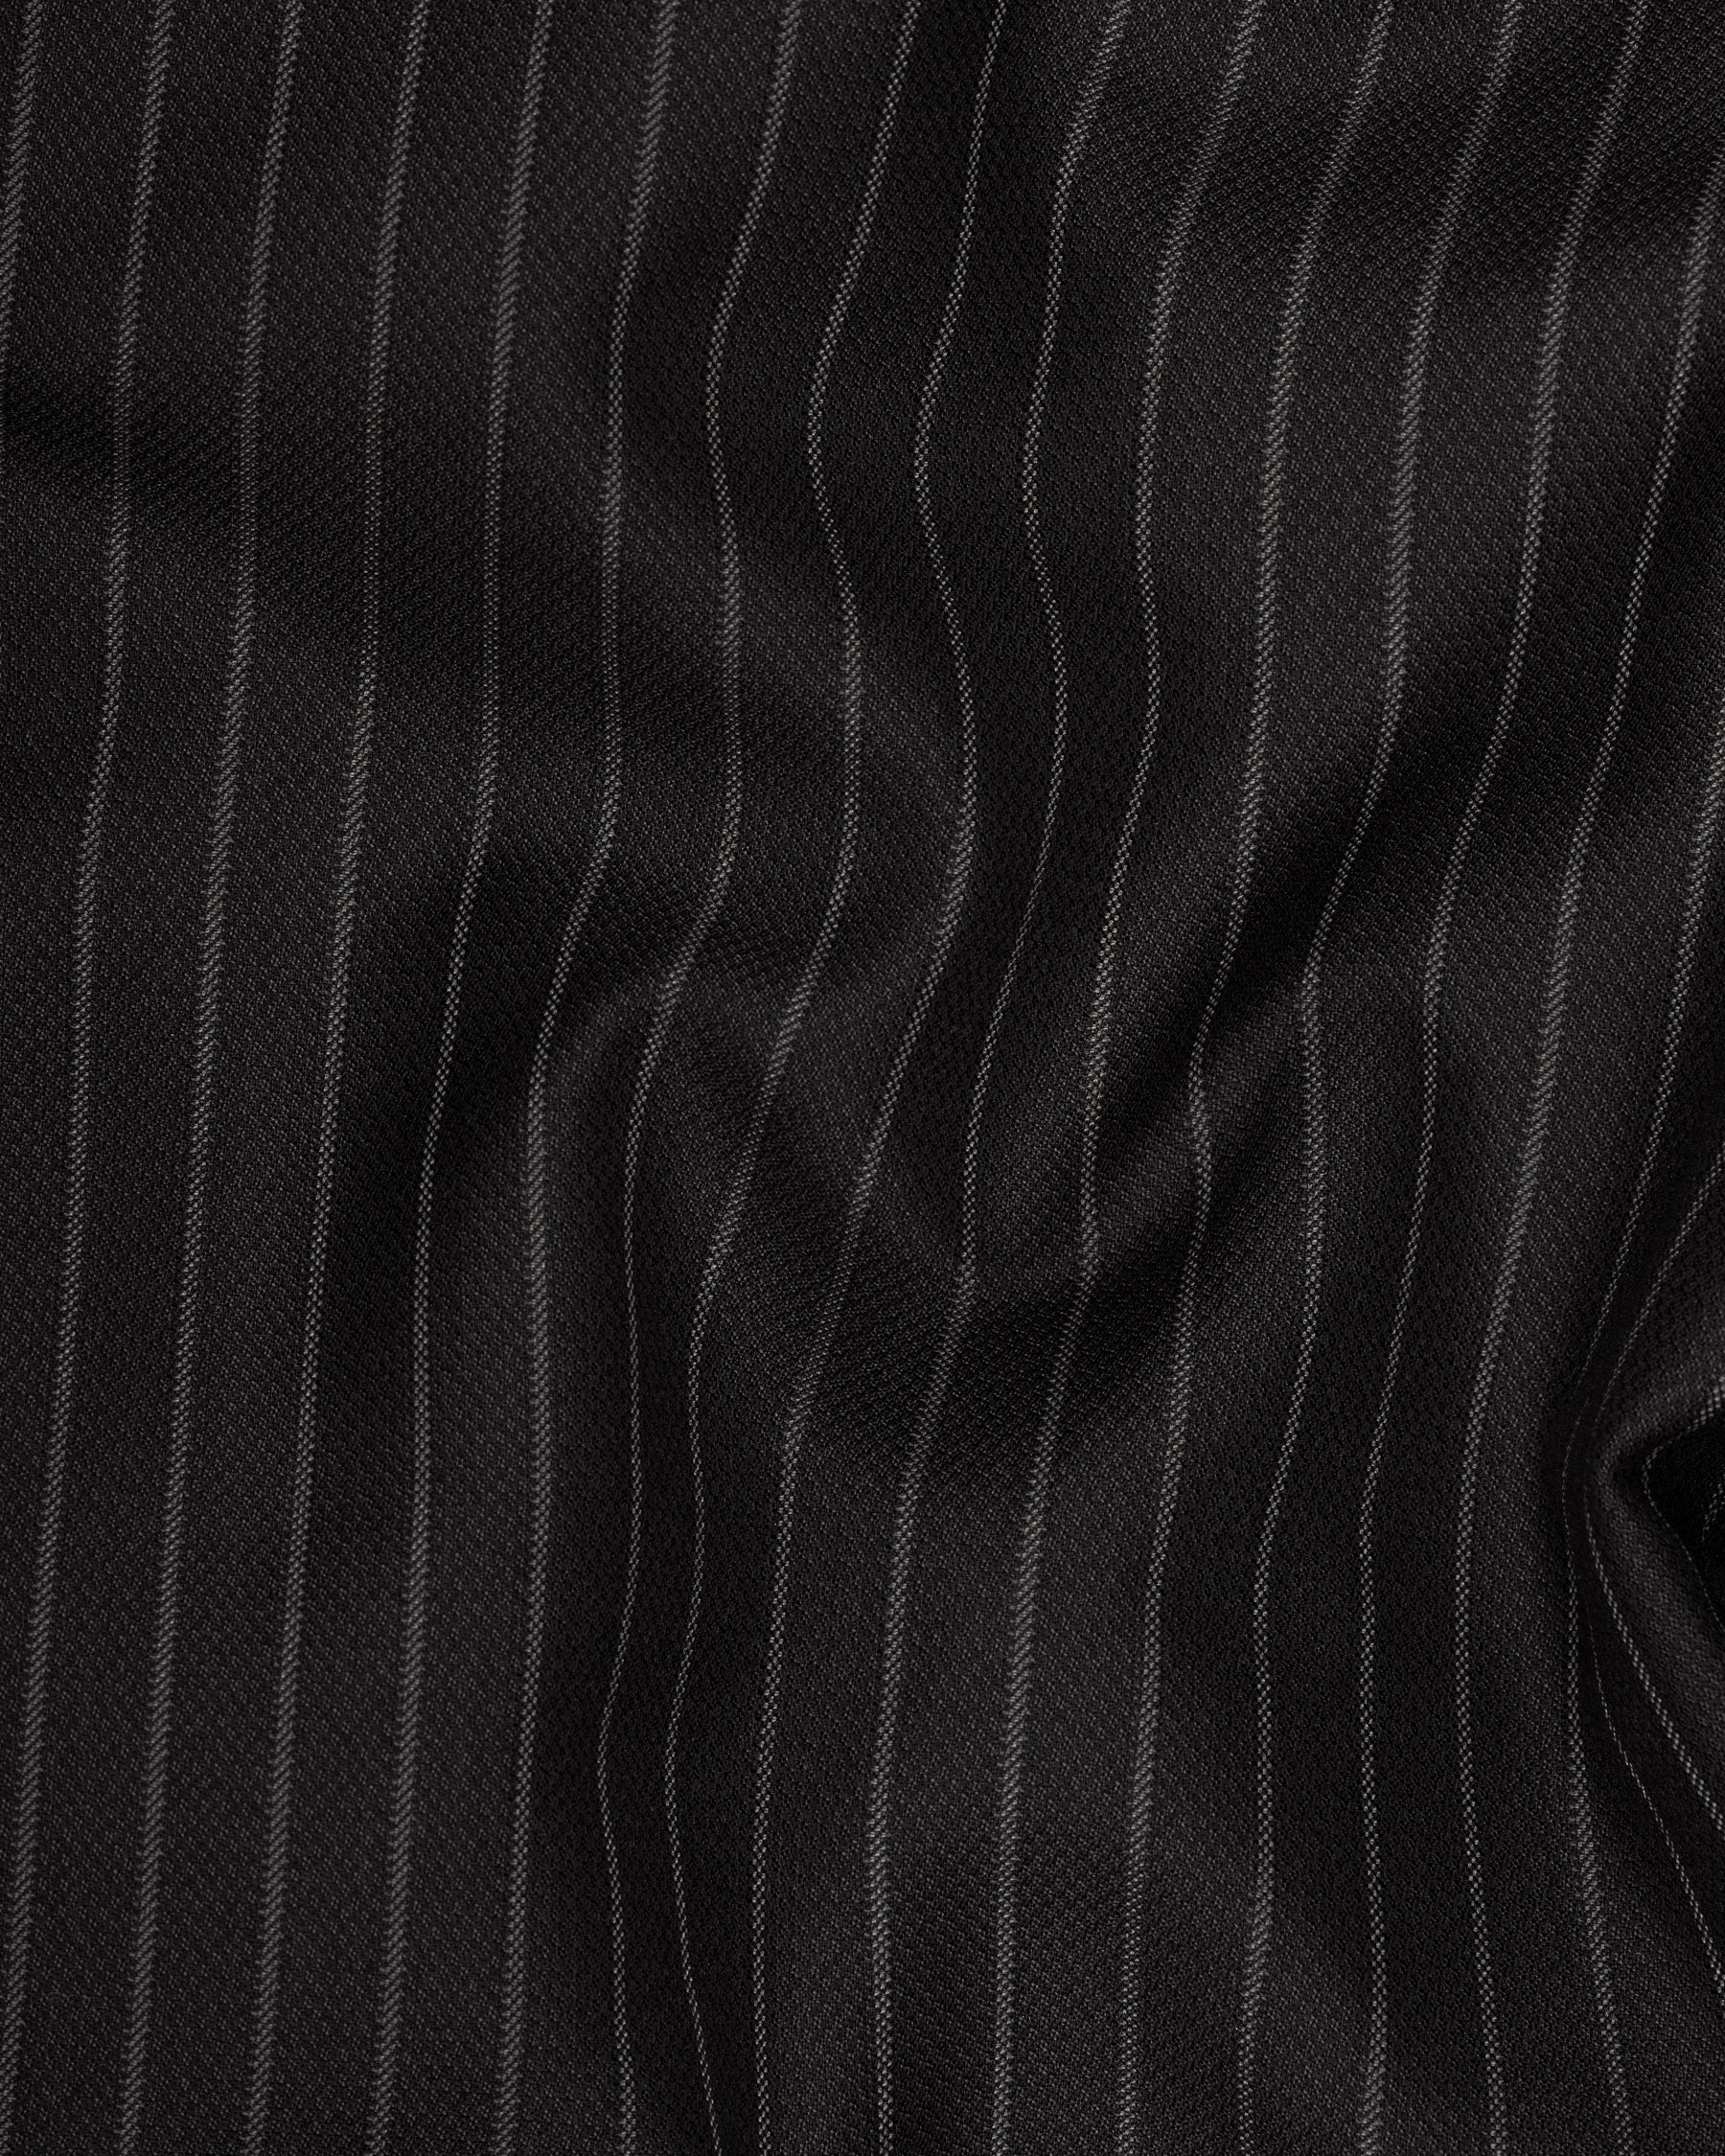 Piano Black Striped Woolrich Pant T1618-28, T1618-30, T1618-32, T1618-34, T1618-36, T1618-38, T1618-40, T1618-42, T1618-44